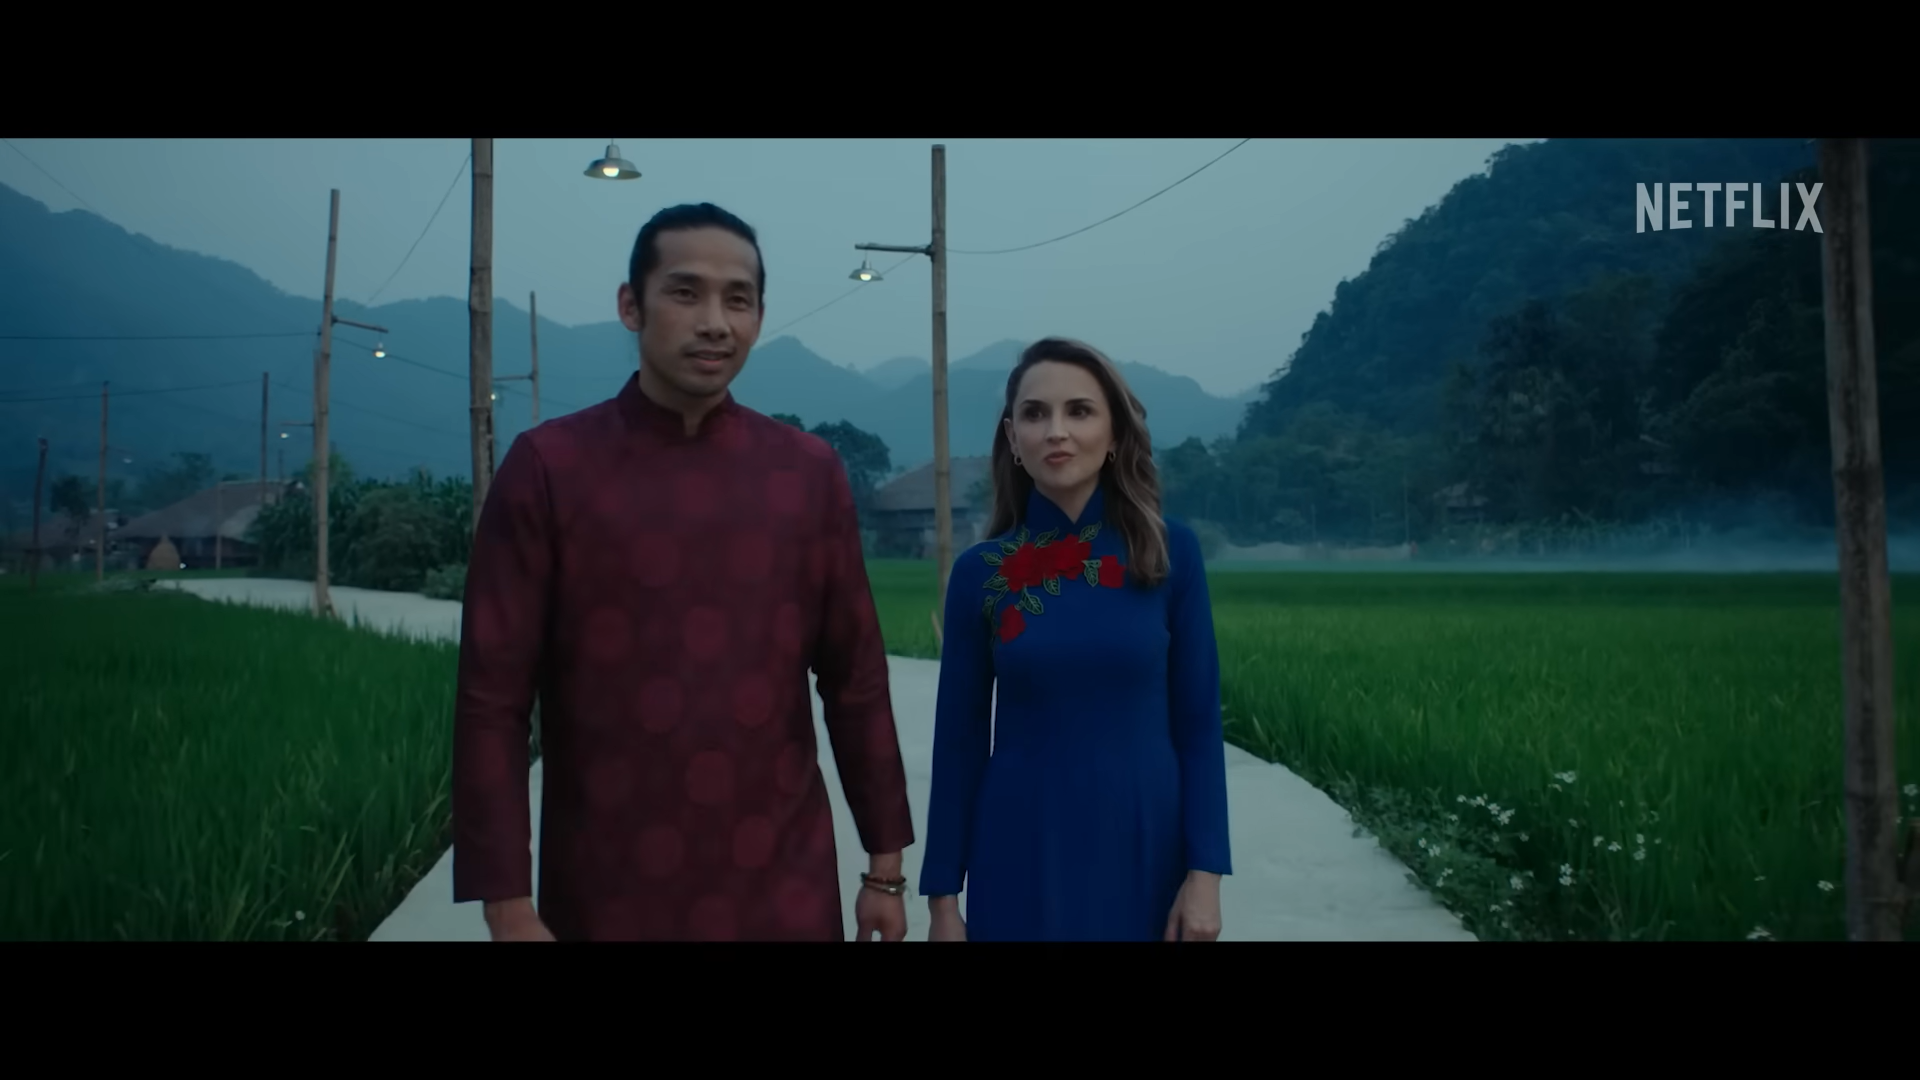 Cặp đôi nhân vật chính diện áo dài Việt Nam. Ảnh: Chụp màn hình